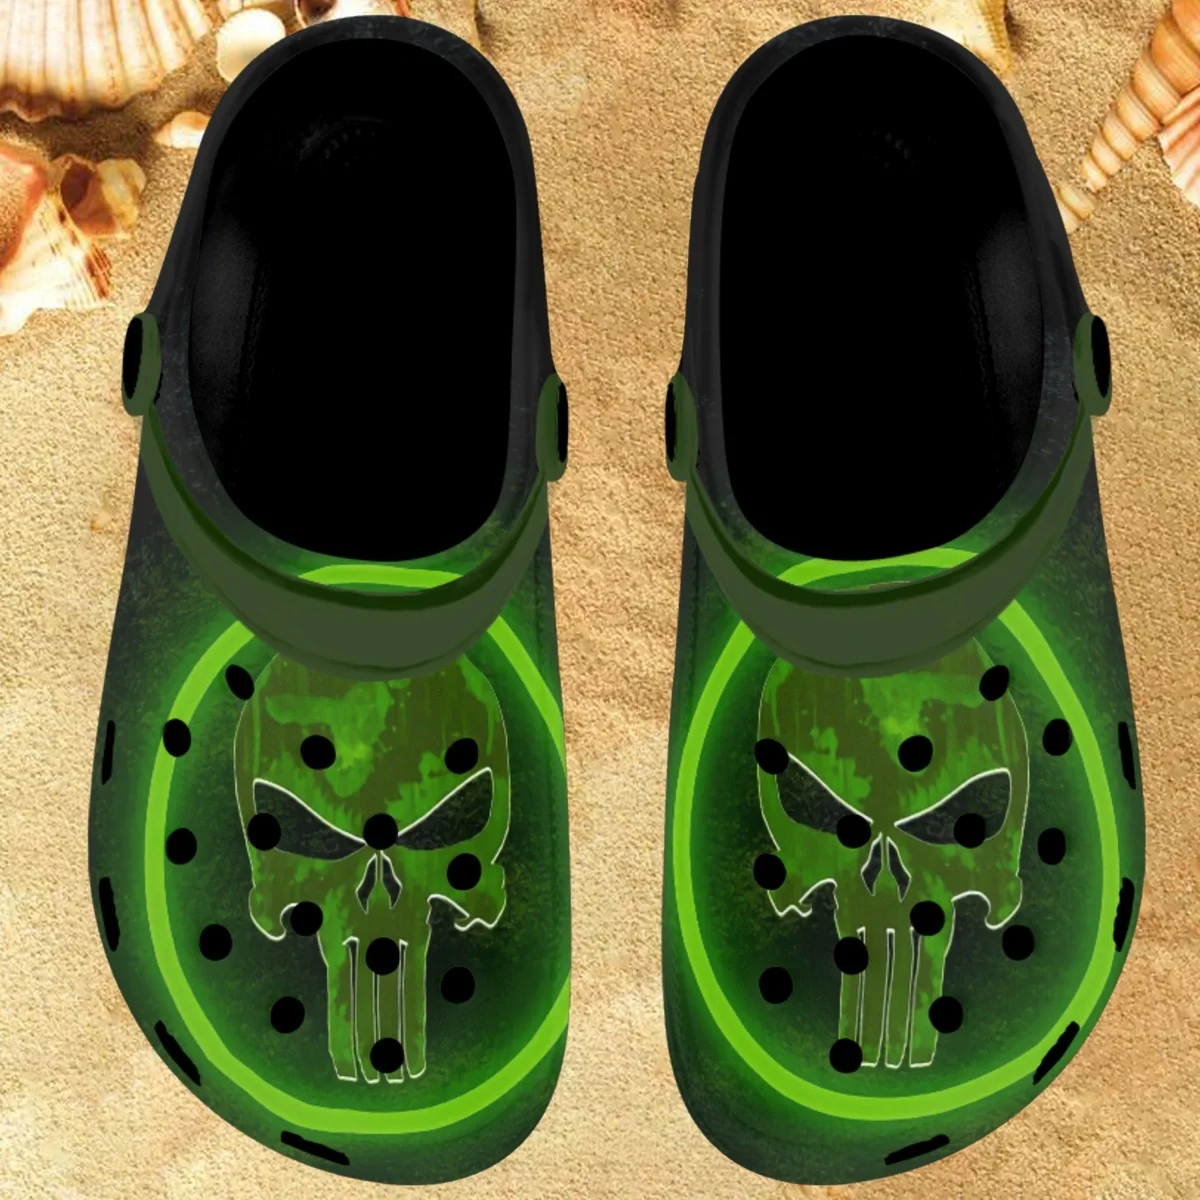 

Шлепанцы Nopersonality Punisher Elements для взрослых, зеленые шлепанцы, черные шлепанцы, пляжные сандалии, летняя популярная обувь для женщин